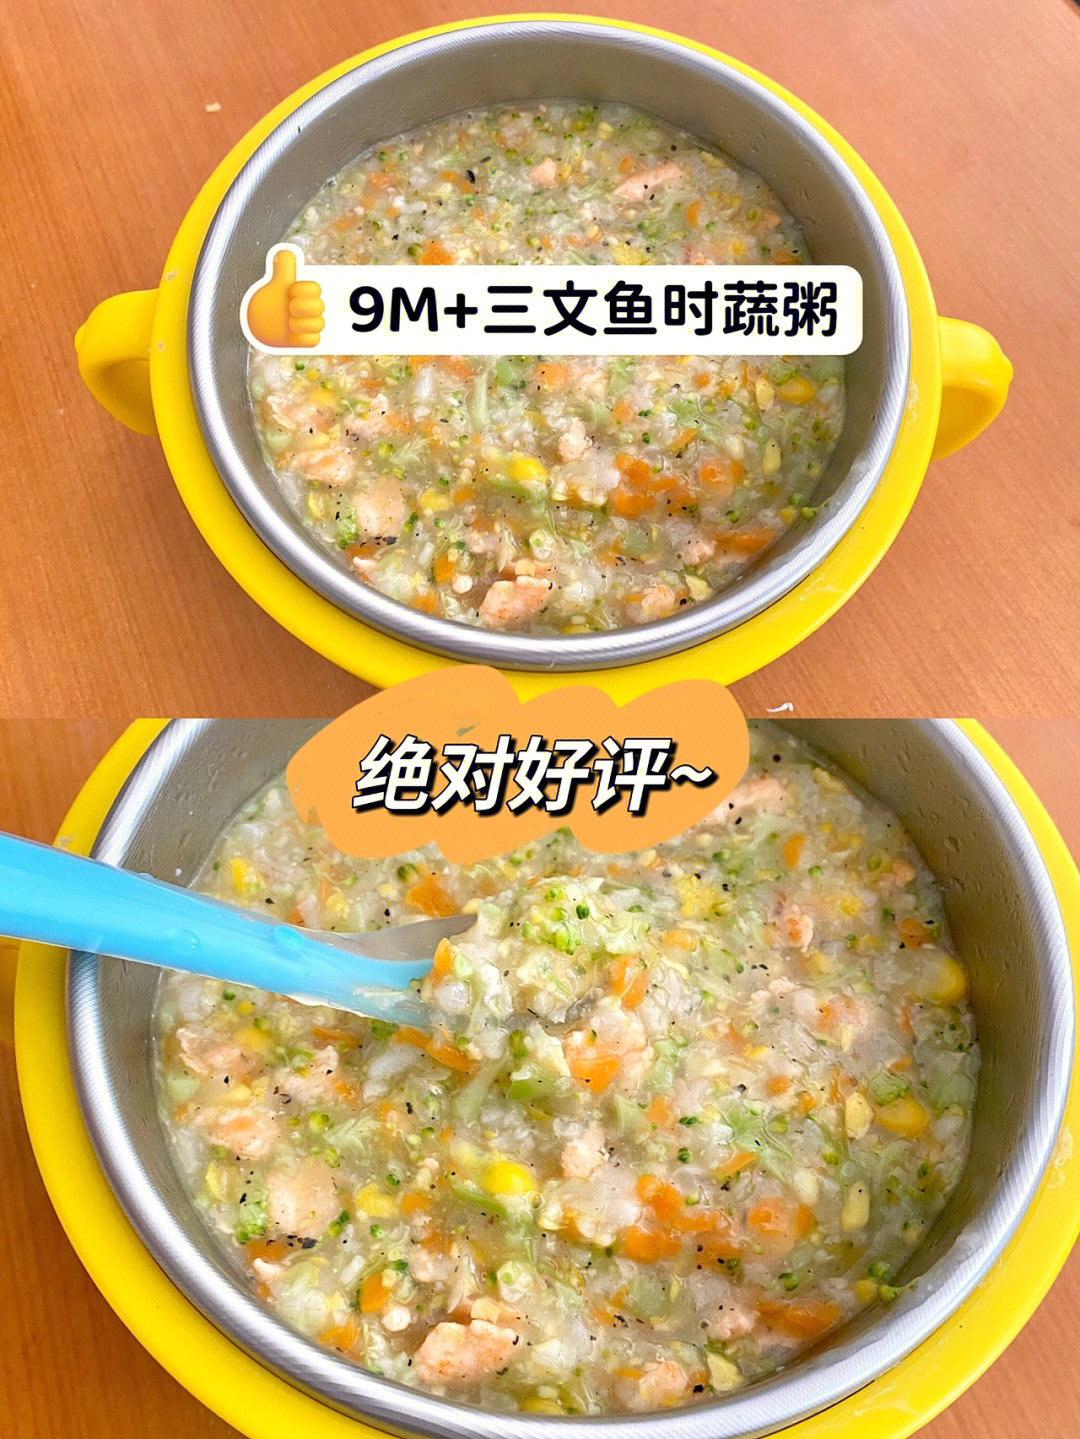 三文鱼时蔬粥的做法:[飞机r]准备材料:三文鱼,玉米,胡萝卜,西兰花